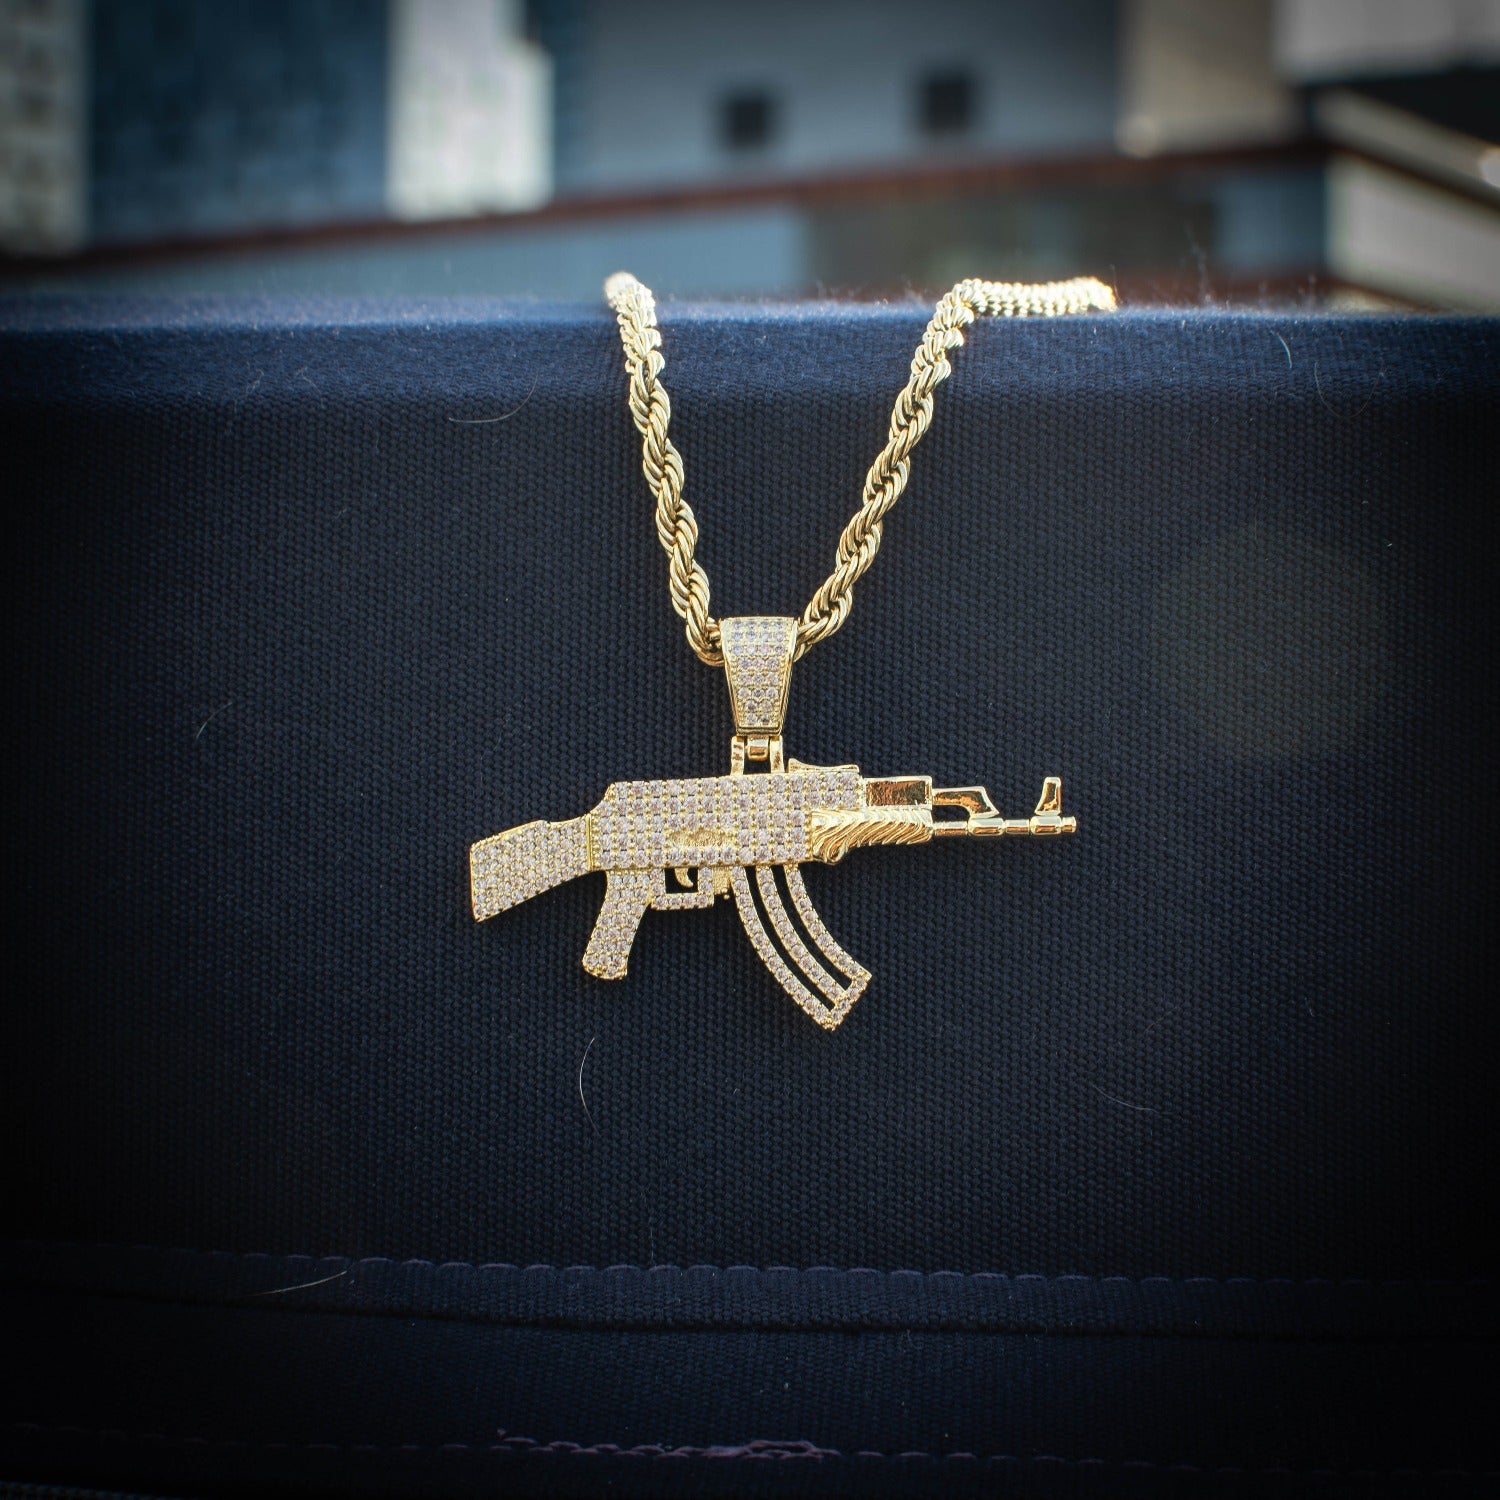 AK 47 Necklace | Techwear Jewelry – Karnage Streetwear